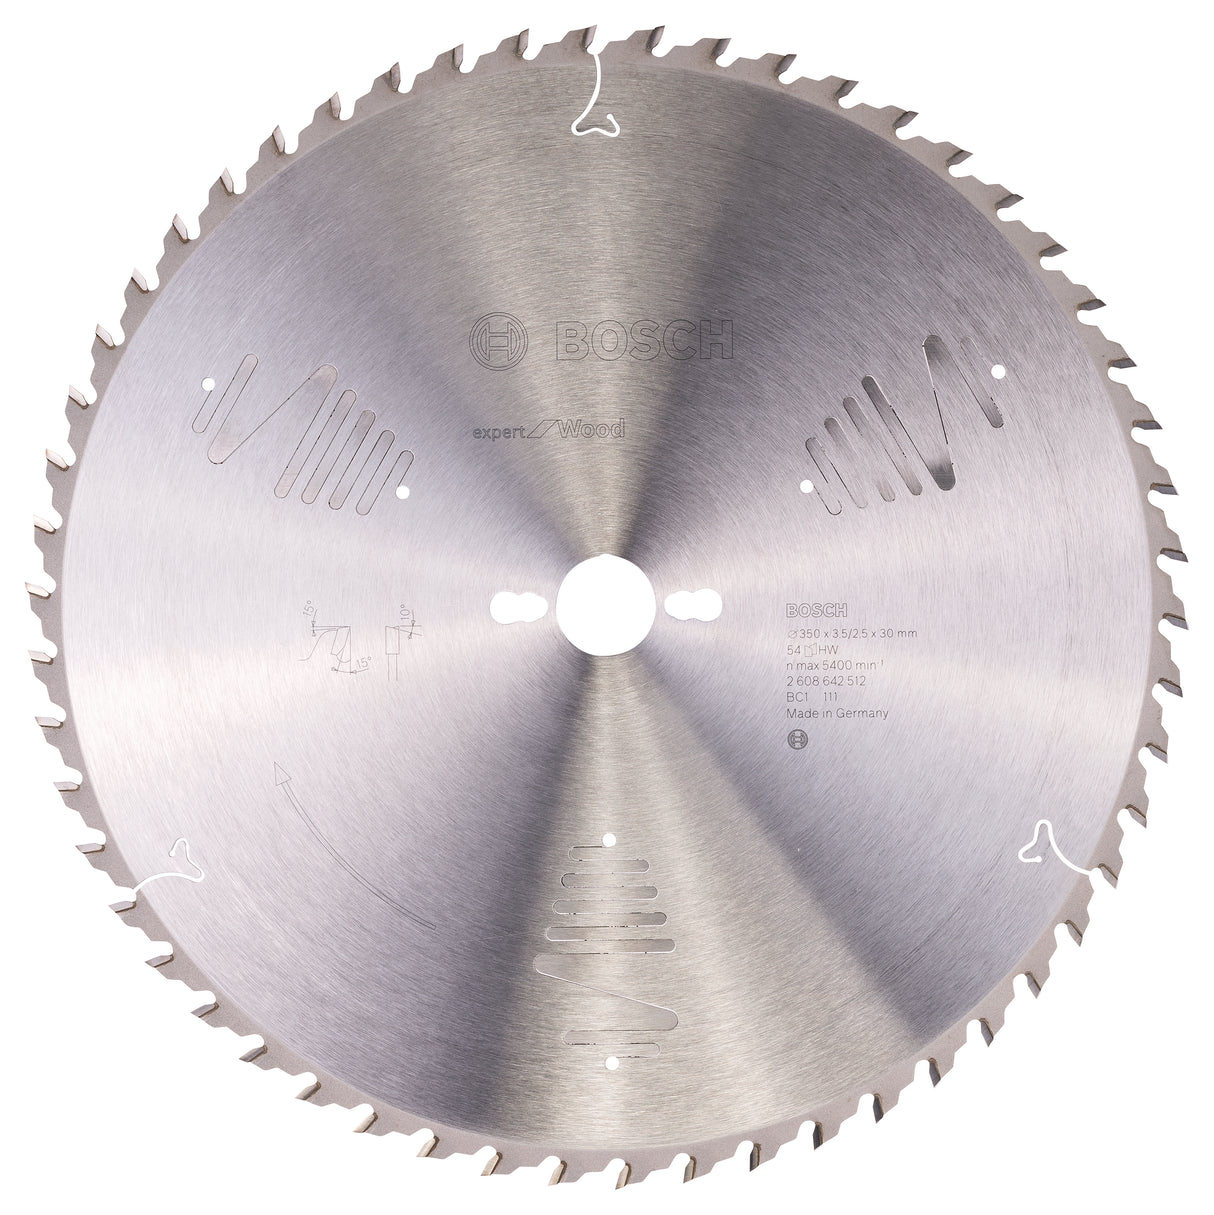 Bosch Professional Expert Circular Saw Blade for Wood - 350 x 30 x 3.5 mm, 54 Teeth